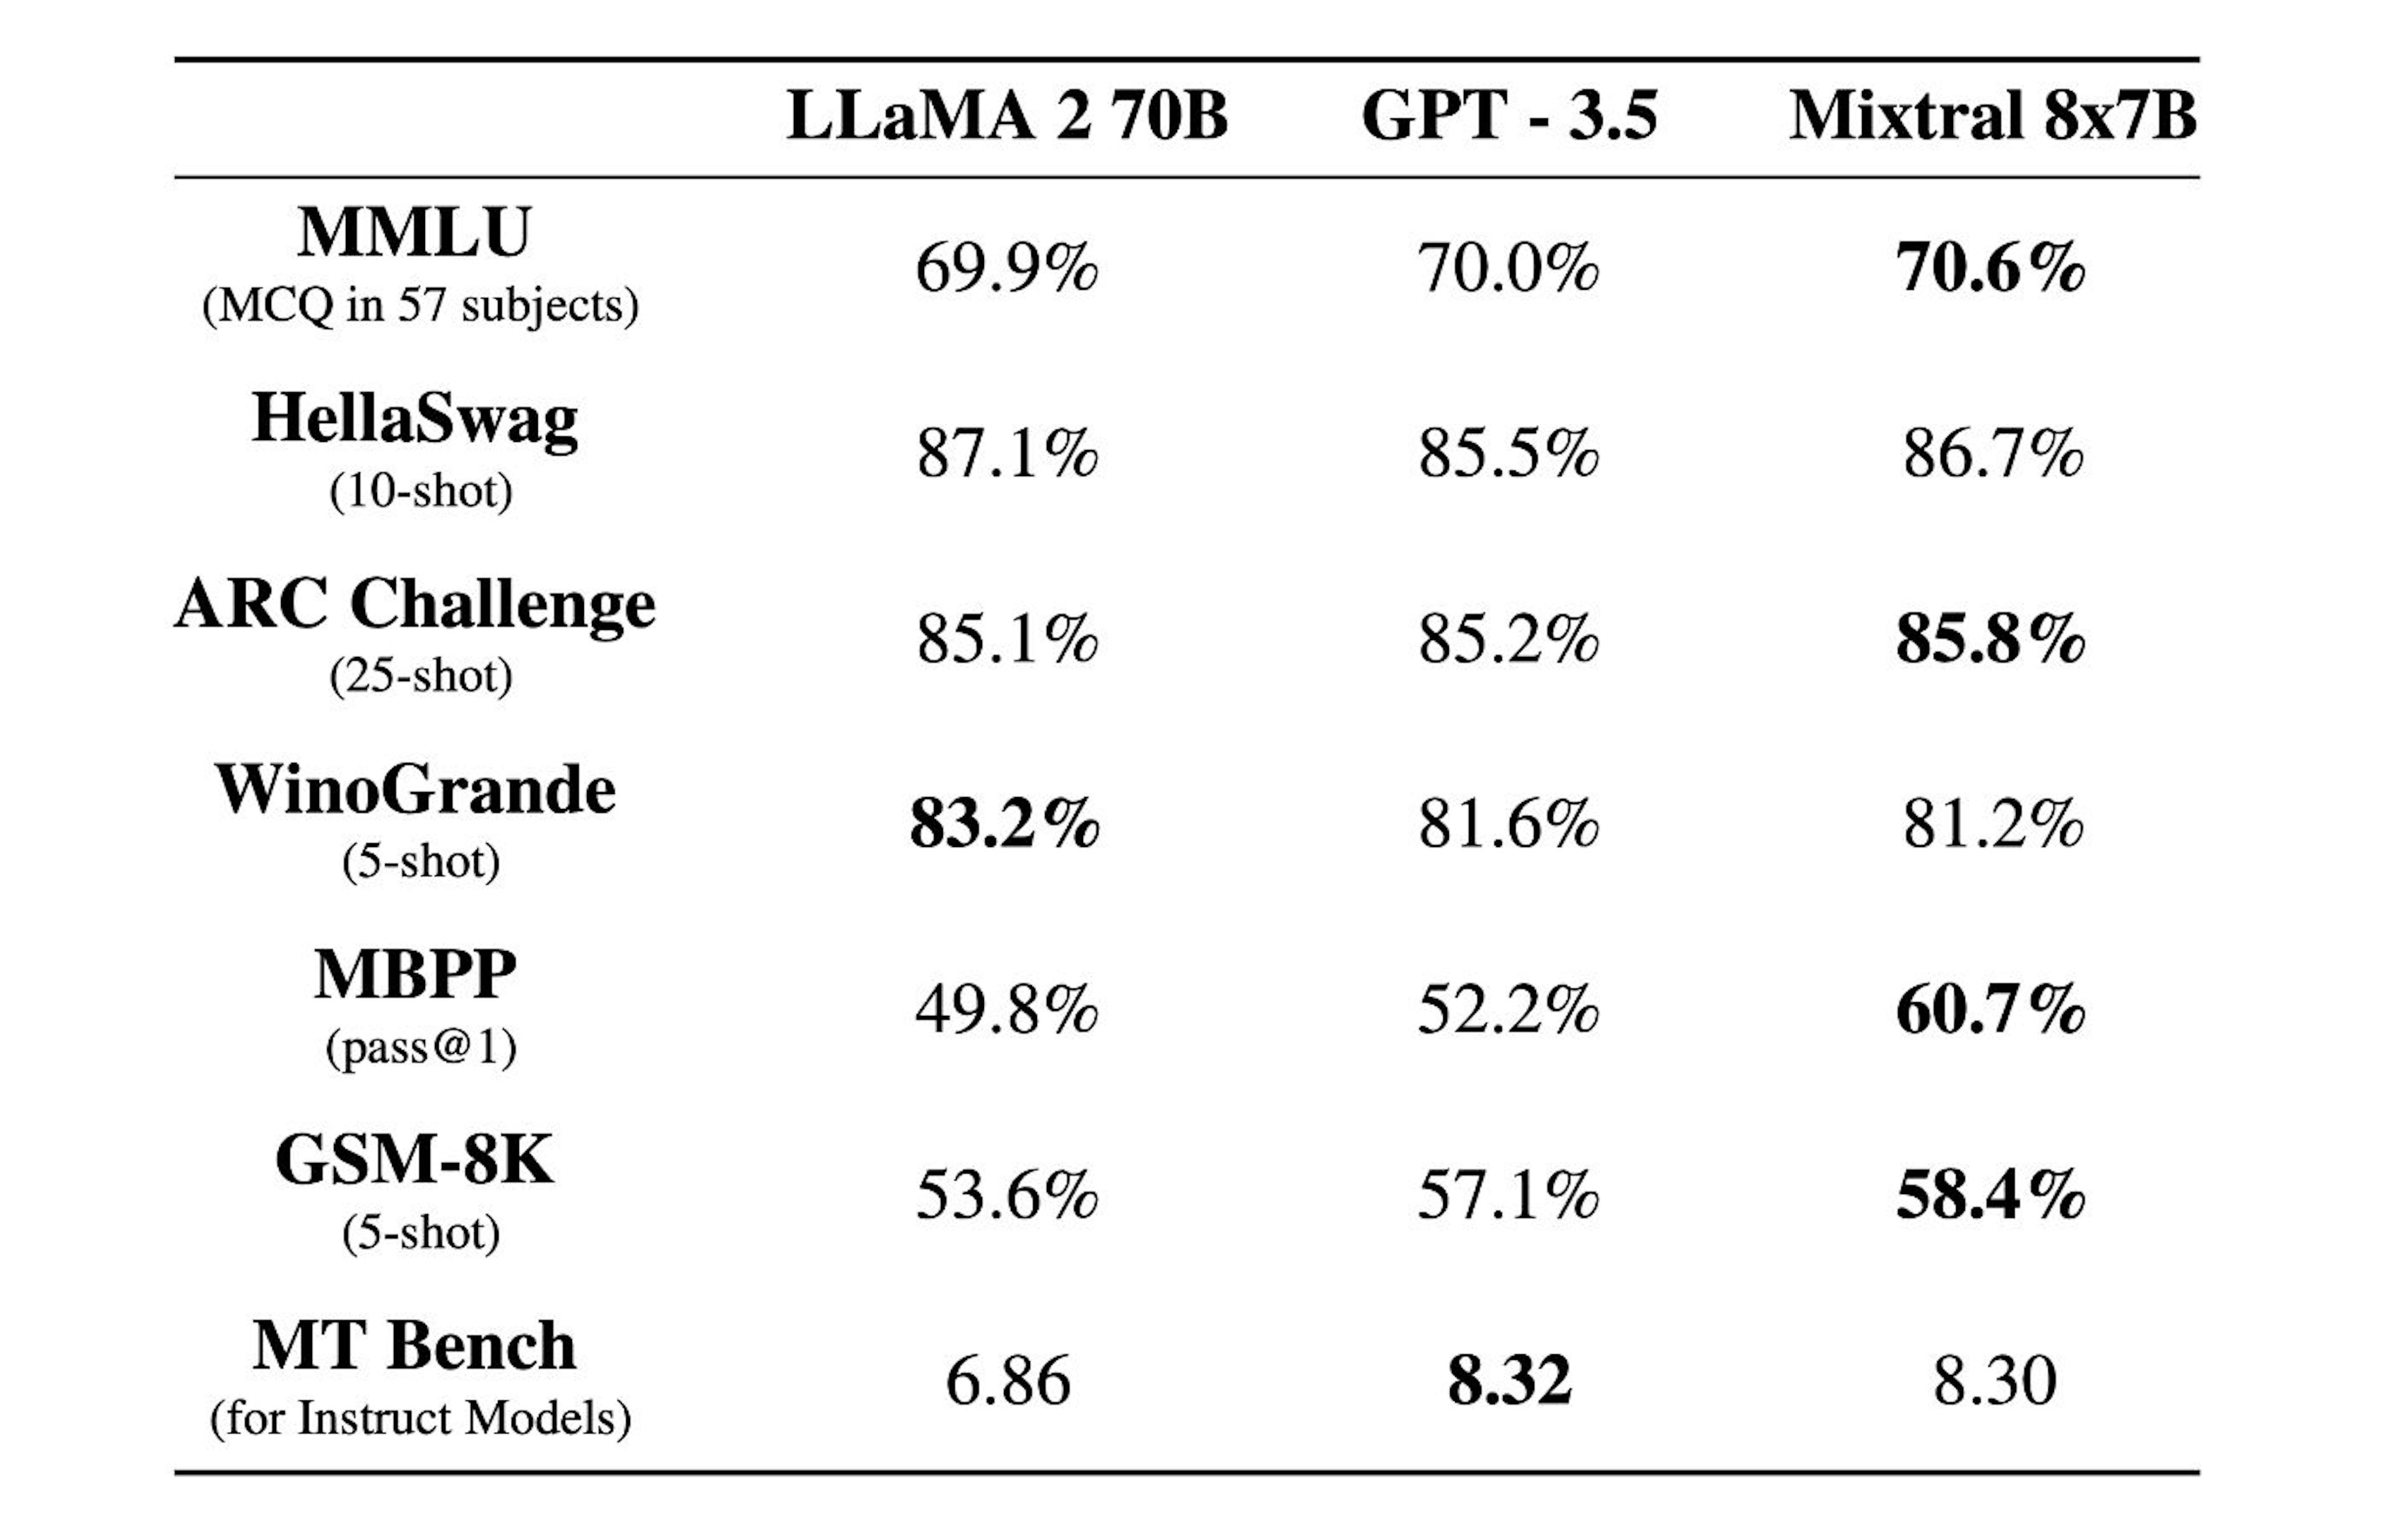 Comparaison entre Mistral, LLaMA et GPT (de https://mistral.ai/news/mixtral-of-experts)